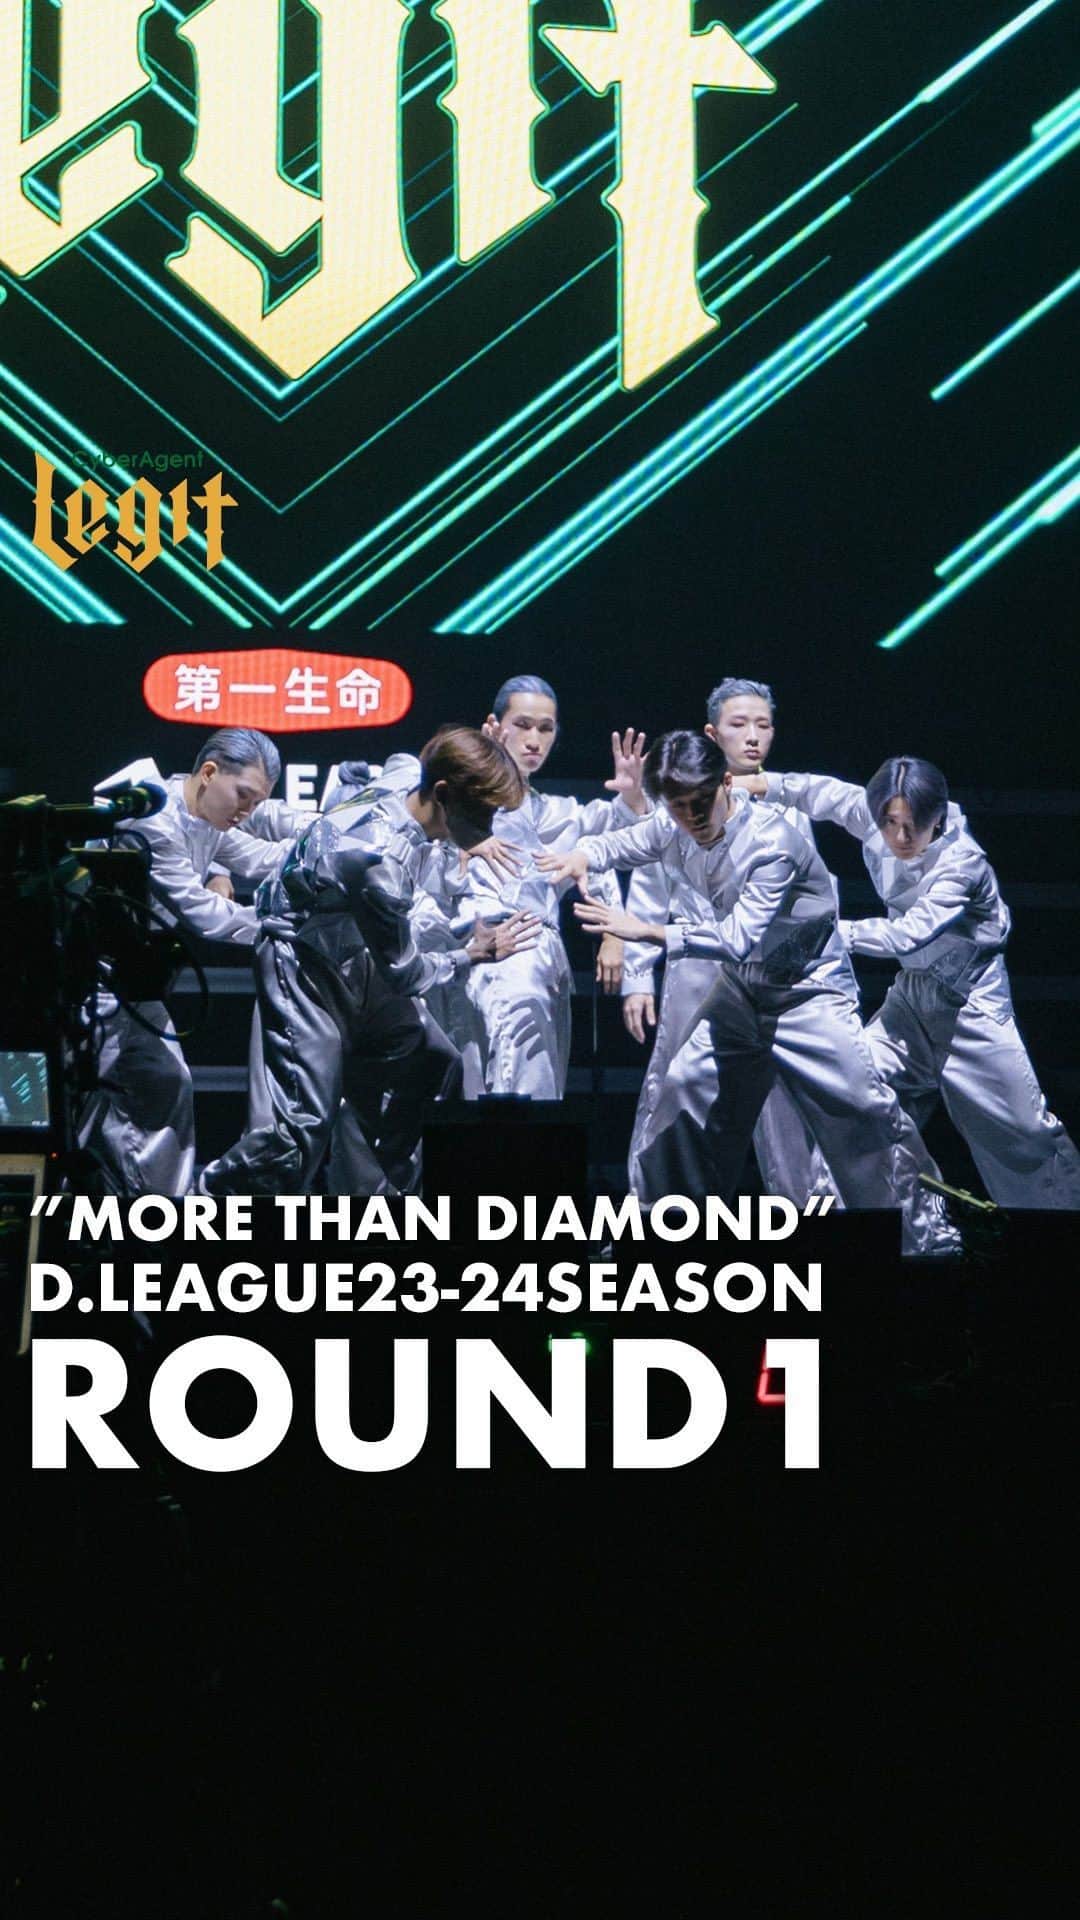 TAKUMIのインスタグラム：「CyberAgent Legit ROUND1 “MORE THAN DIAMOND”  ダイヤモンドより硬い結束 ダイヤモンドの光よりも乱反射するパフォーマンスと華やか 勝利するという誓い “ダイヤモンドを超える踊りと集団“がテーマです。  楽曲 MORE THAN DIAMOND CyberAgent Legit , Jazz2.0 ( @jazz2.0.japan )  作曲・プロデュース @masahide0412  @kantawakatsuki  @fishboydance   衣装 @mirachdesignworks   演出 @fishboydance & @cyberagentlegit   振付 @ato_kojima  @1chinosuke  @bboyshosei  @beatelements_takumi  @fishboydance  @ena_lock  @lilshowww   是非ご覧ください。  #レジット #Dリーグ #cyberagentlegit」